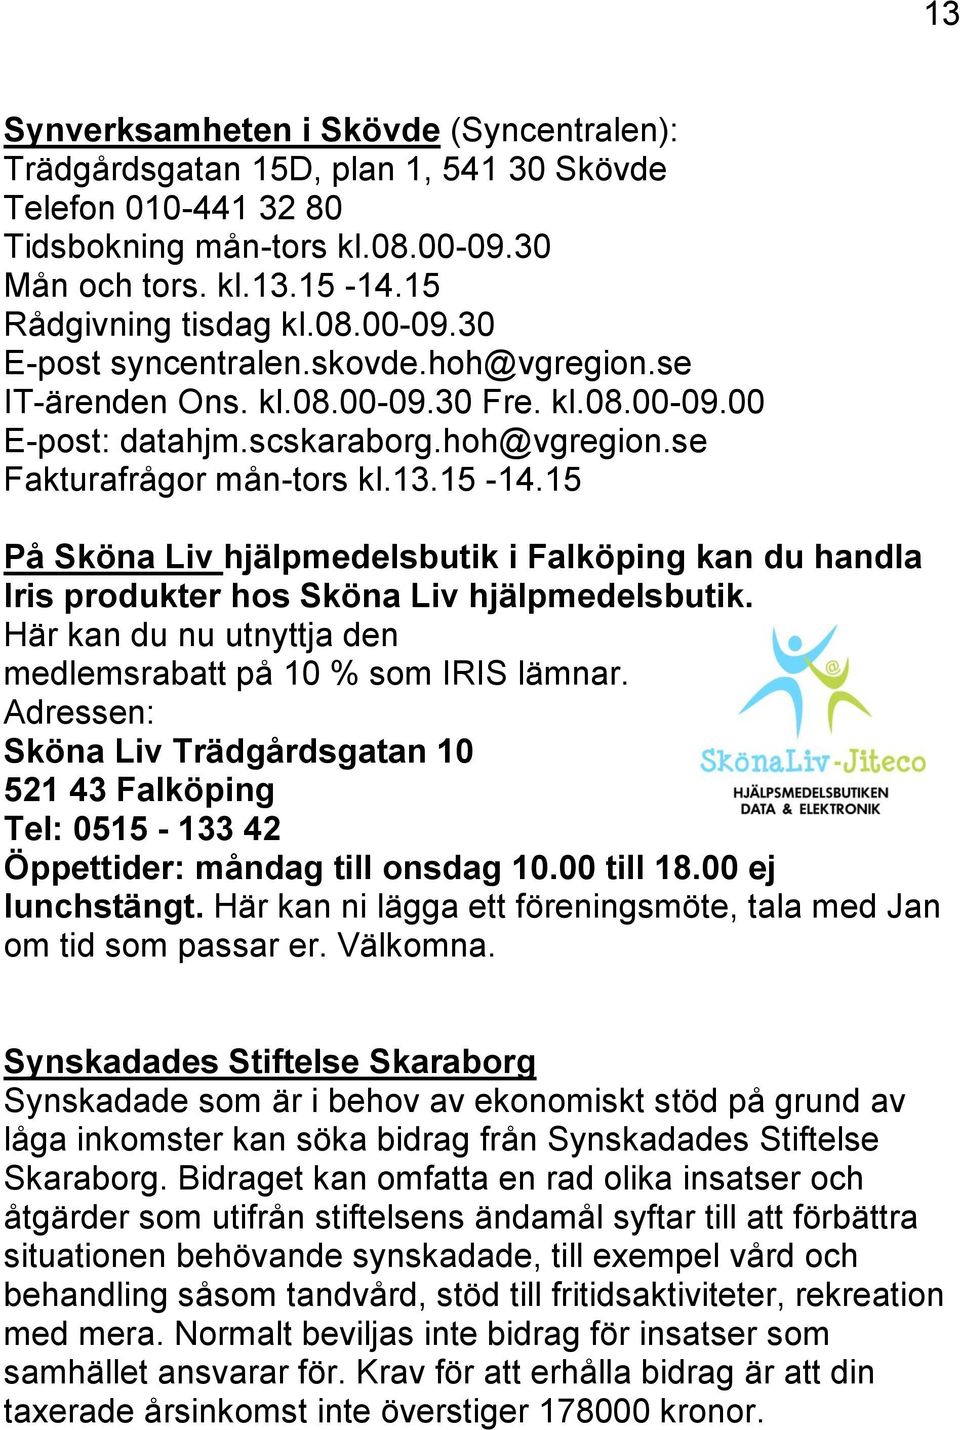 15 På Sköna Liv hjälpmedelsbutik i Falköping kan du handla Iris produkter hos Sköna Liv hjälpmedelsbutik. Här kan du nu utnyttja den medlemsrabatt på 10 % som IRIS lämnar.